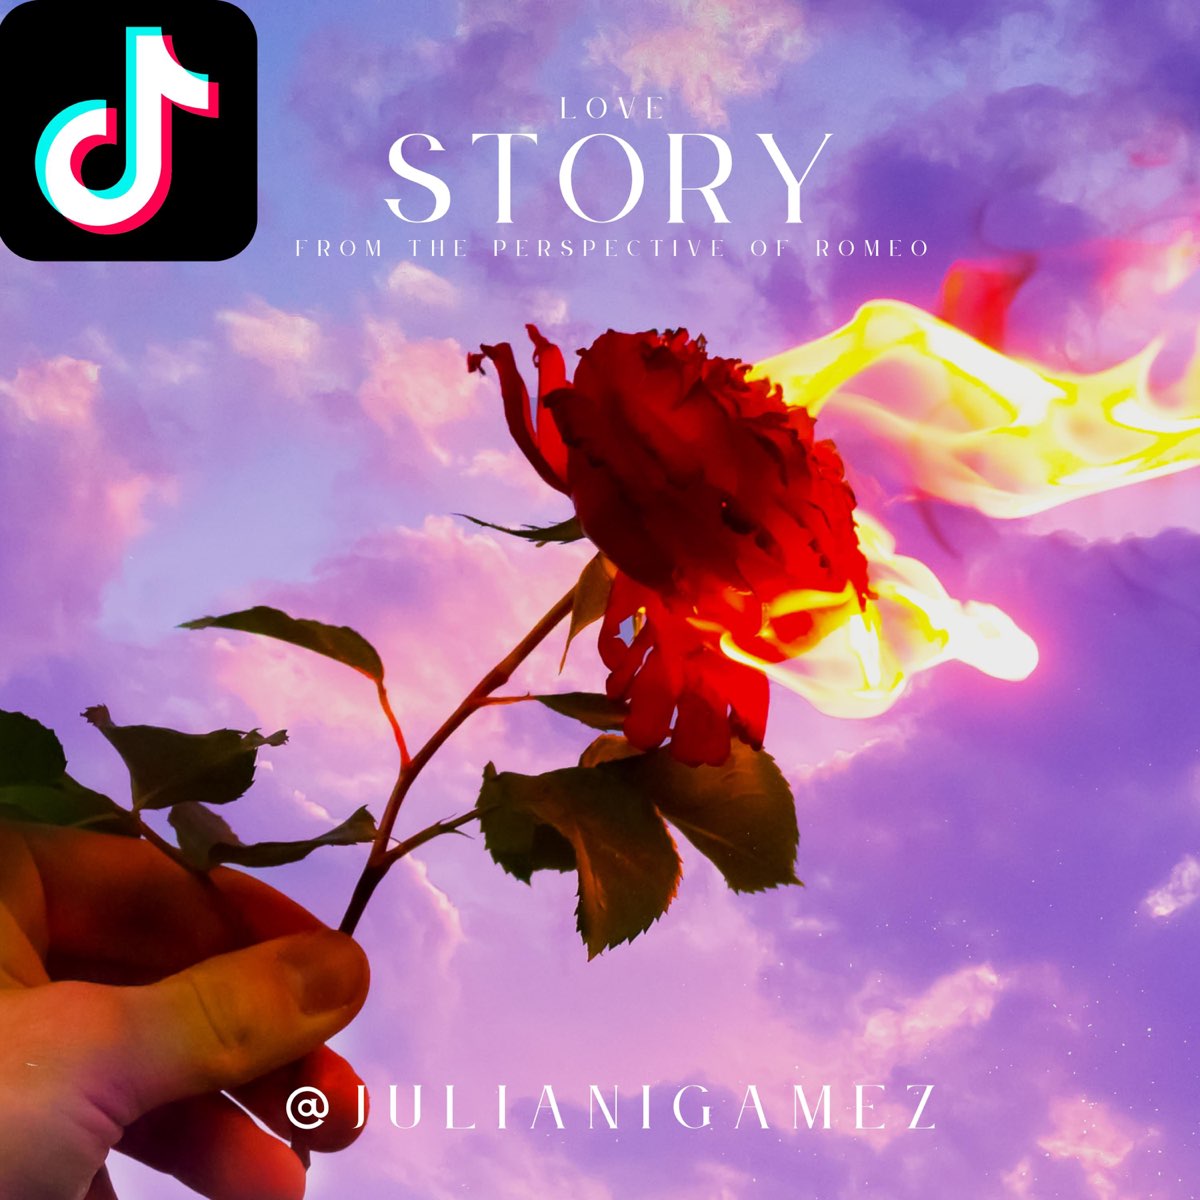 Love story julian gamez